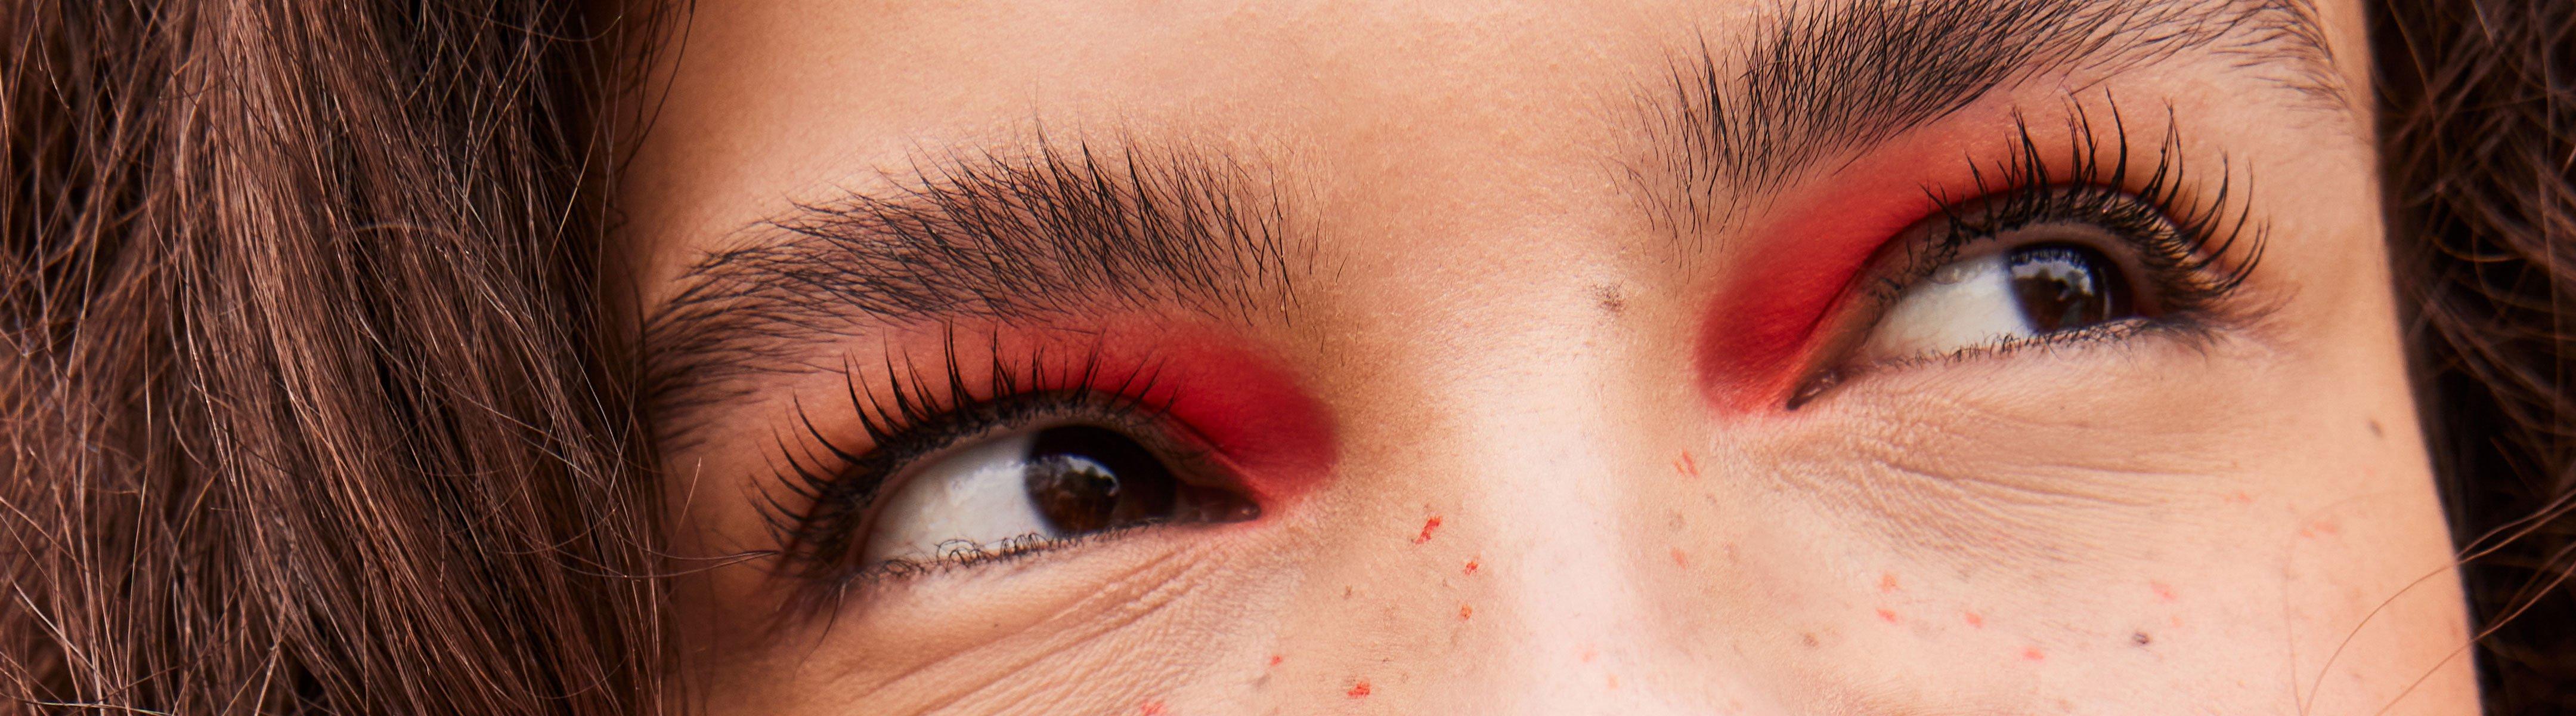 Essence Crayon Brosse Sourcil Eyebrow Designer Beige - Beauté Maquillage  Sourcils Femme 1,89 €